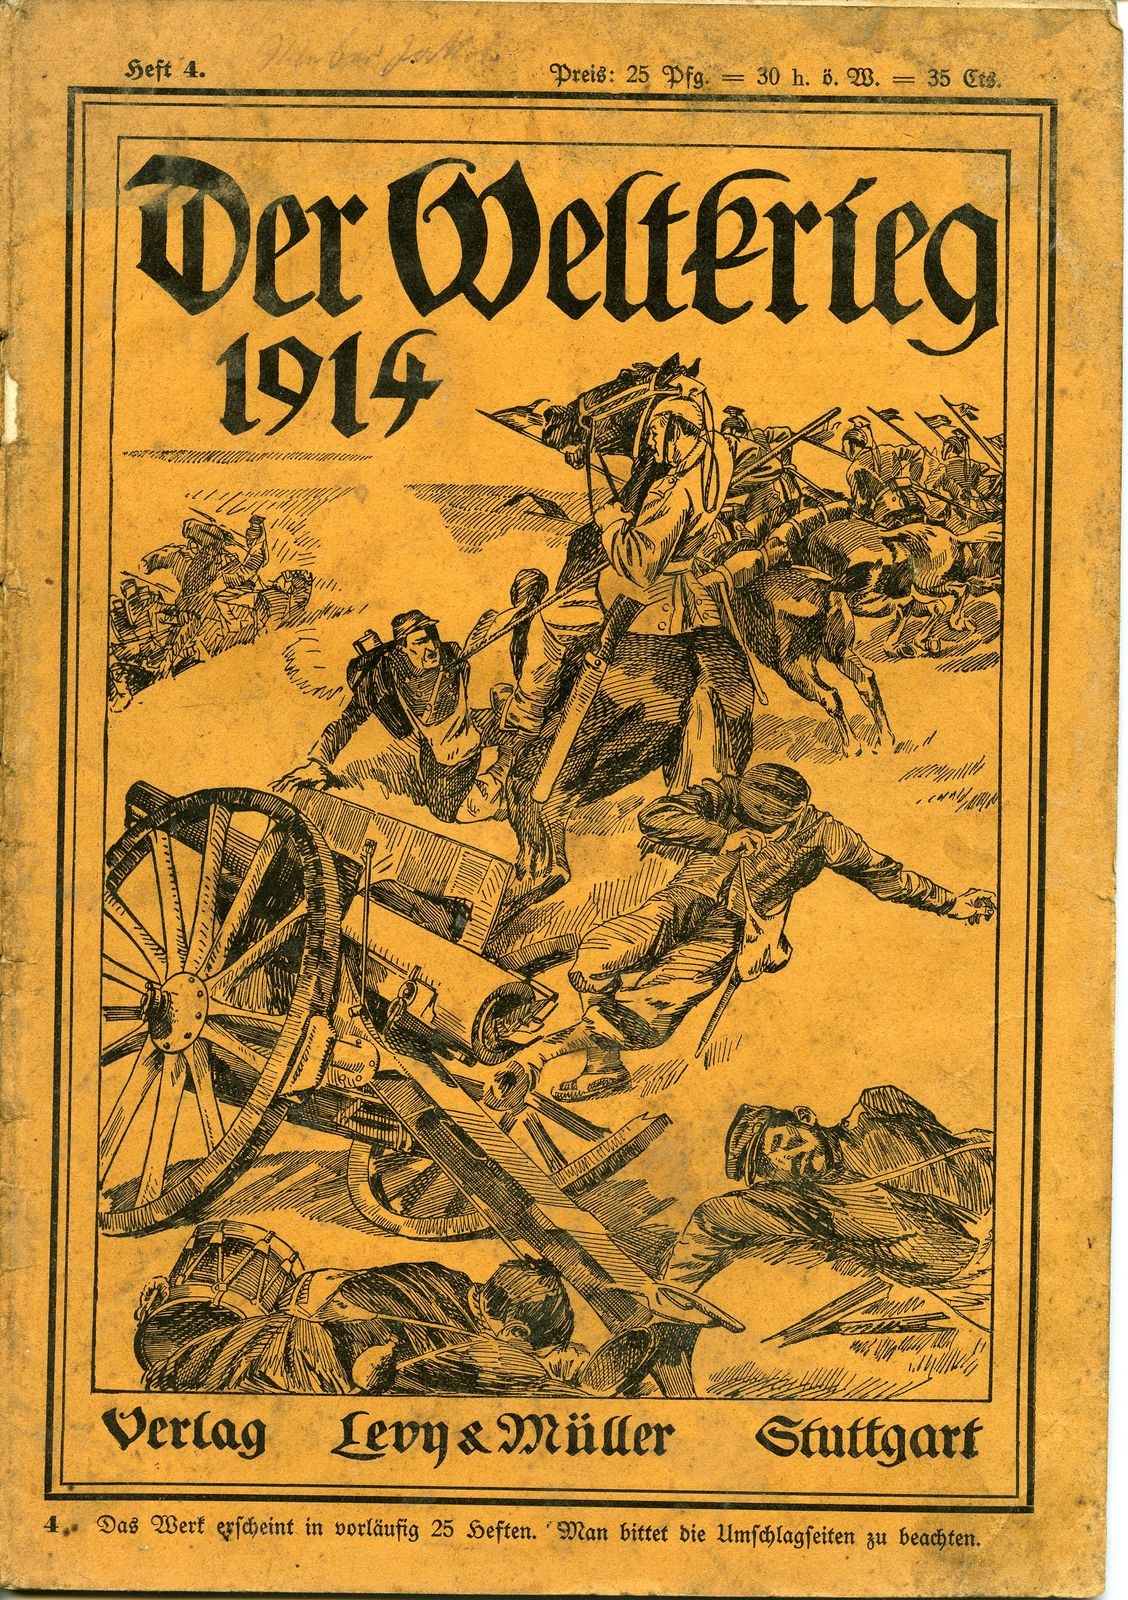 Zeitschrift "Der Weltkrieg 1914", Heft 4 (Historisches Museum der Pfalz, Speyer CC BY)